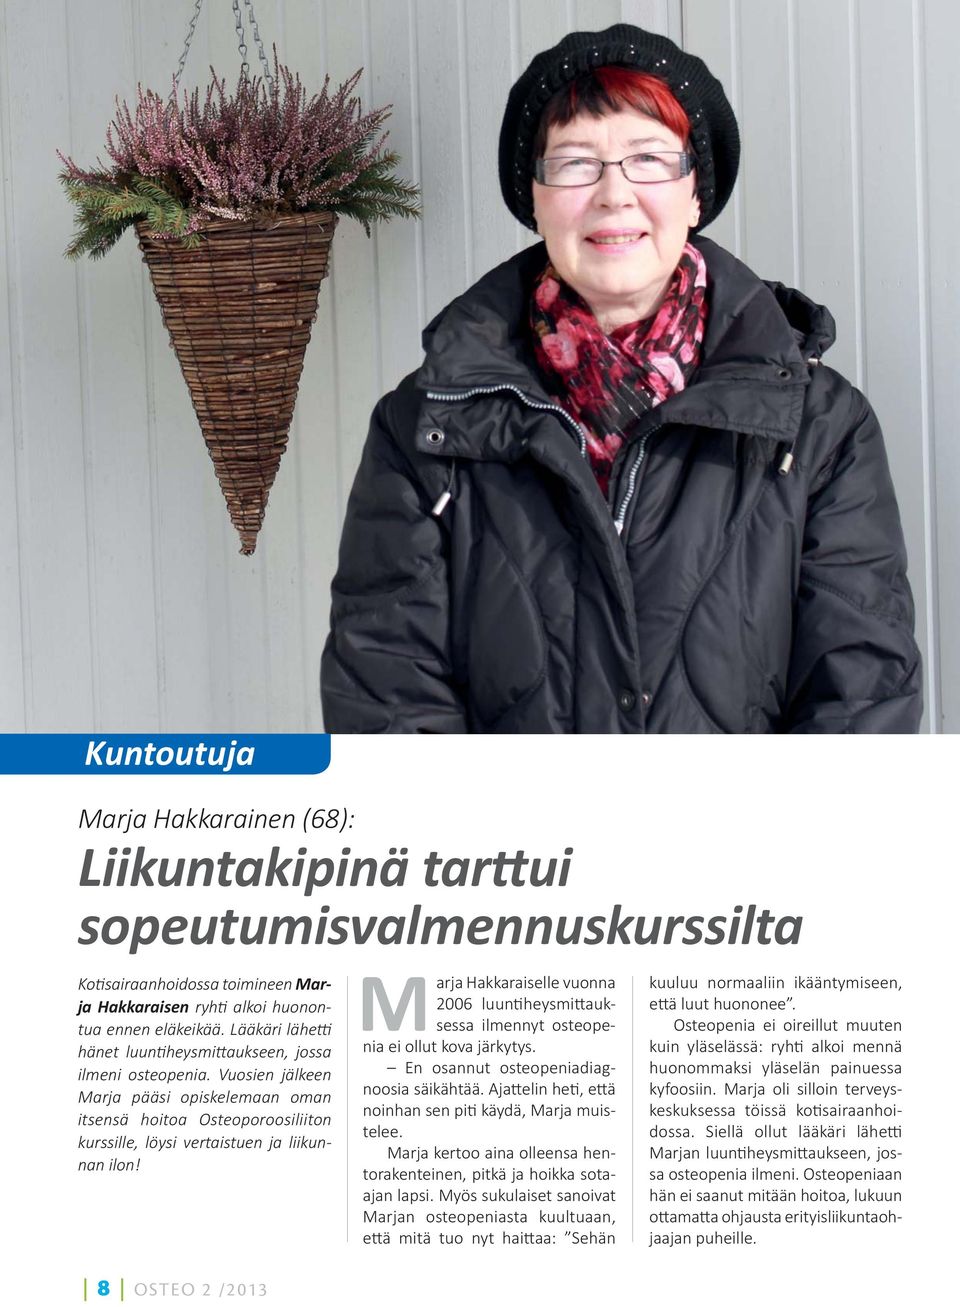 8 OSTEO 2 /2013 Marja Hakkaraiselle vuonna 2006 luun heysmi auksessa ilmennyt osteopenia ei ollut kova järkytys. En osannut osteopeniadiagnoosia säikähtää.